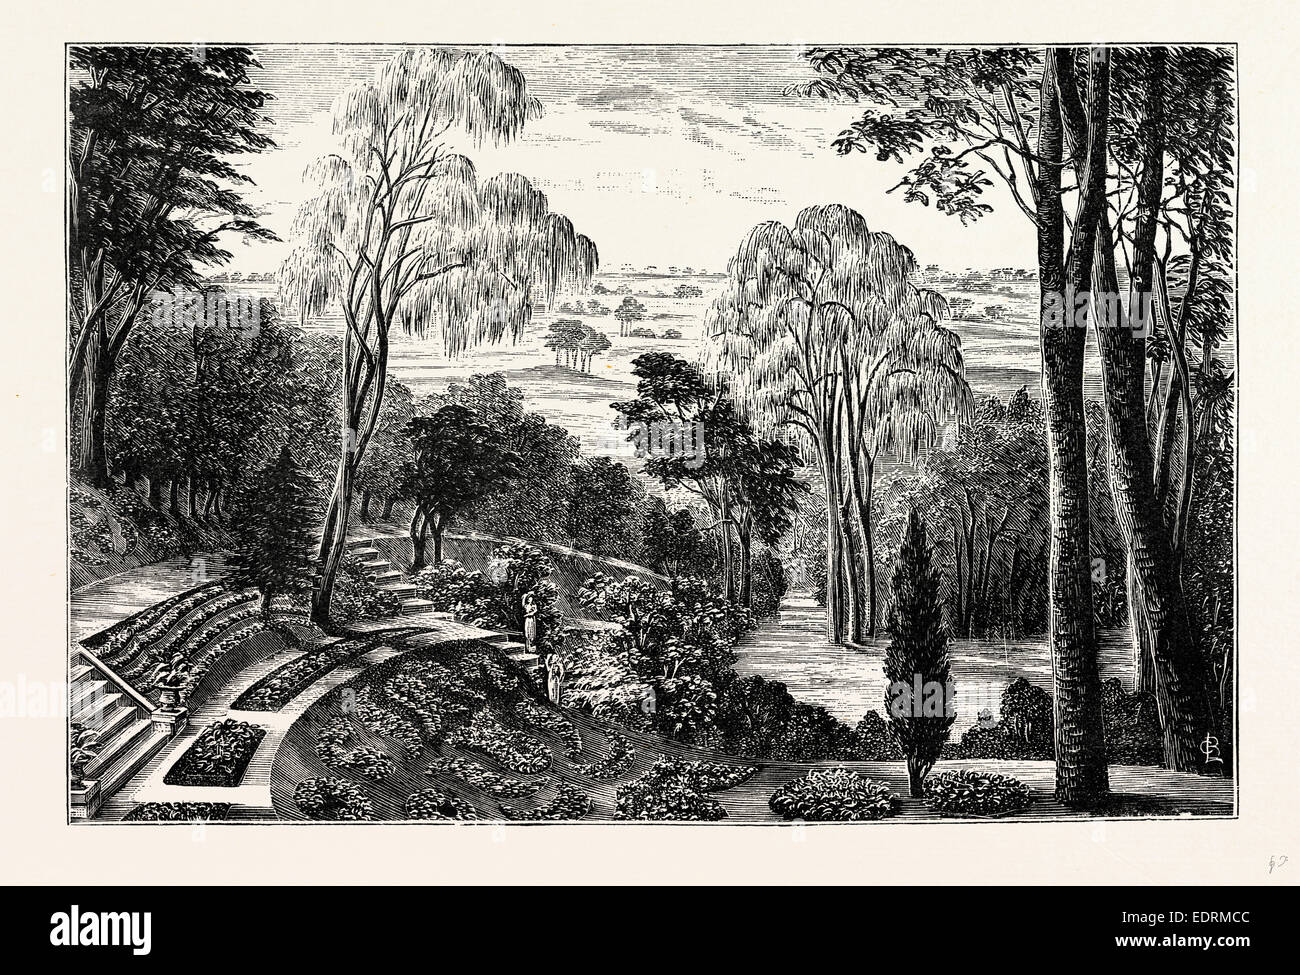 Le jardin de la Duchesse, Château de Belvoir, Royaume-Uni, Angleterre, gravure années 1870, la Grande-Bretagne Banque D'Images